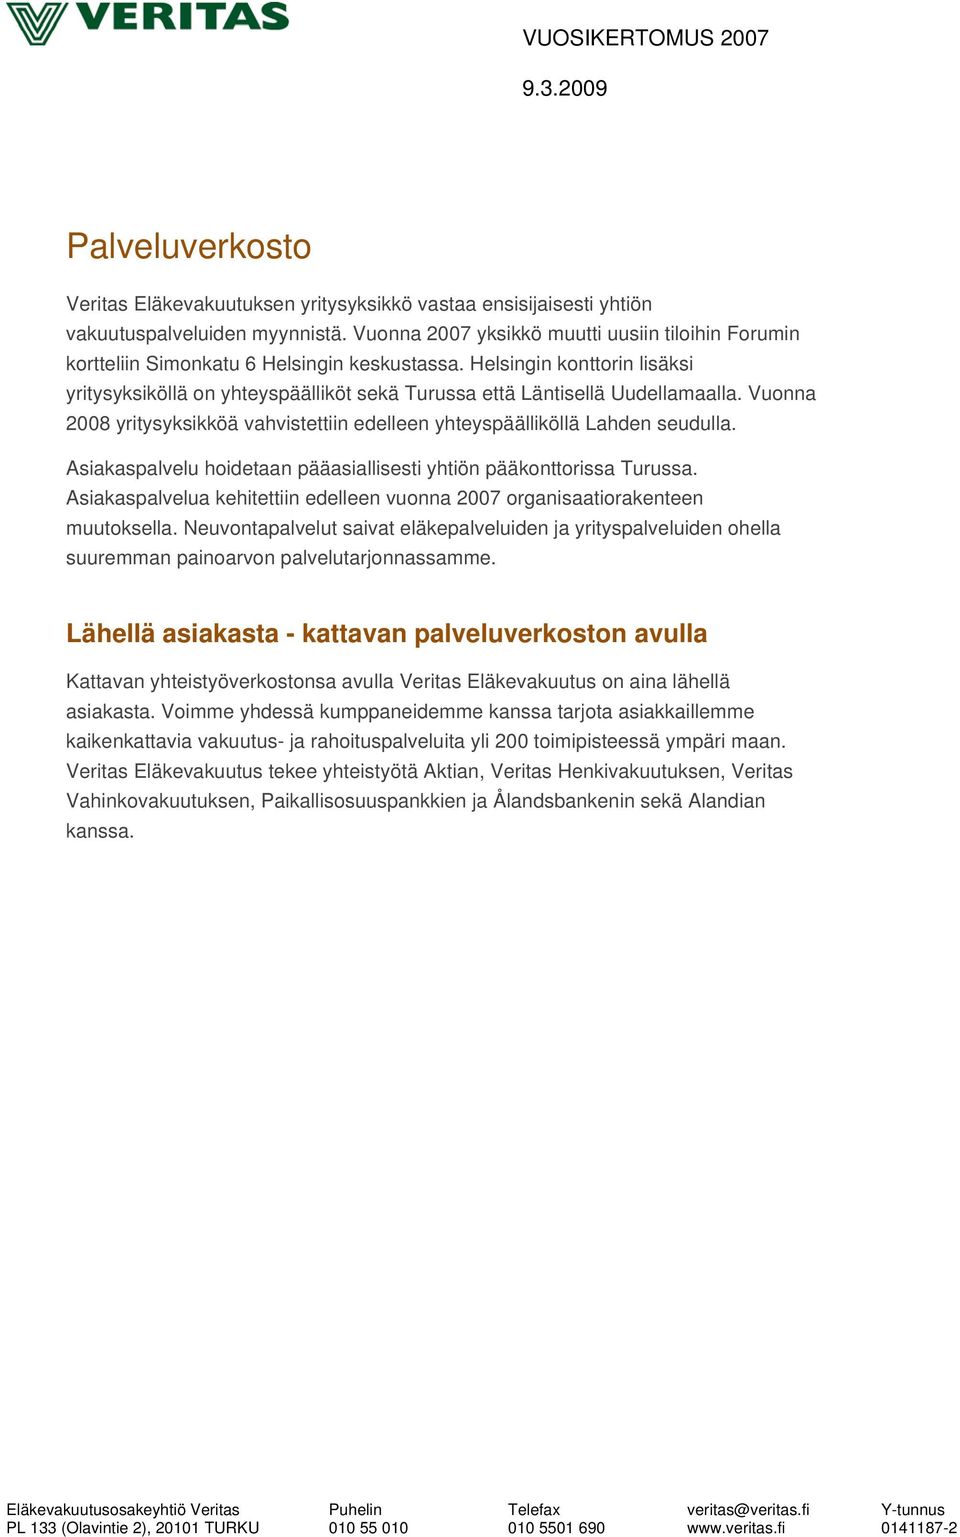 Helsingin konttorin lisäksi yritysyksiköllä on yhteyspäälliköt sekä Turussa että Läntisellä Uudellamaalla. Vuonna 2008 yritysyksikköä vahvistettiin edelleen yhteyspäälliköllä Lahden seudulla.